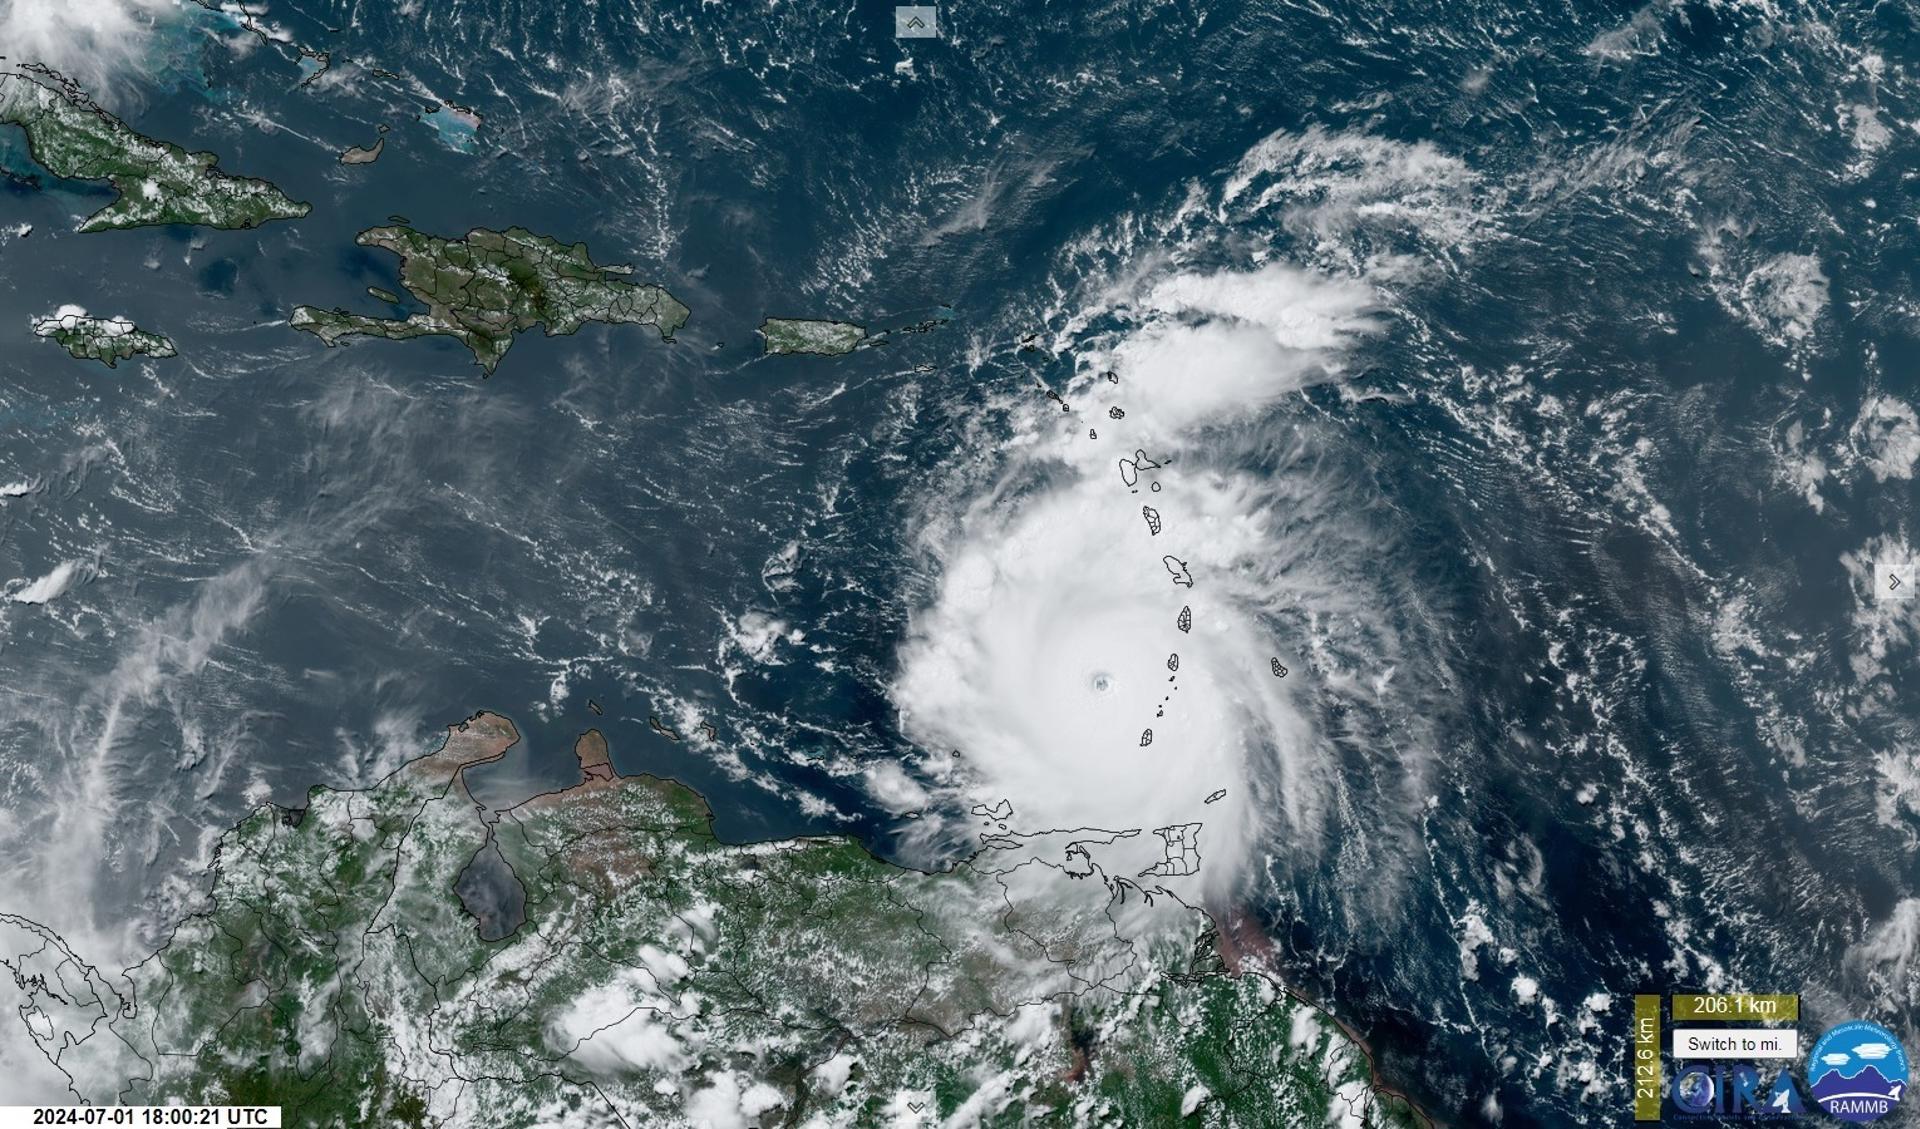 Captura de una imagen satelital de la Subdivisión de Meteorología Regional y de Mesoescala (RAMMB) y del Instituto Cooperativo para la Investigación Atmosférica (CIRA) de la Universidad Estatal de Colorado (CSU) donde se muestra una vista del ojo del huracán Beryl durante su paso por el Caribe. EFE/ RAMMB/CIRA/CSU